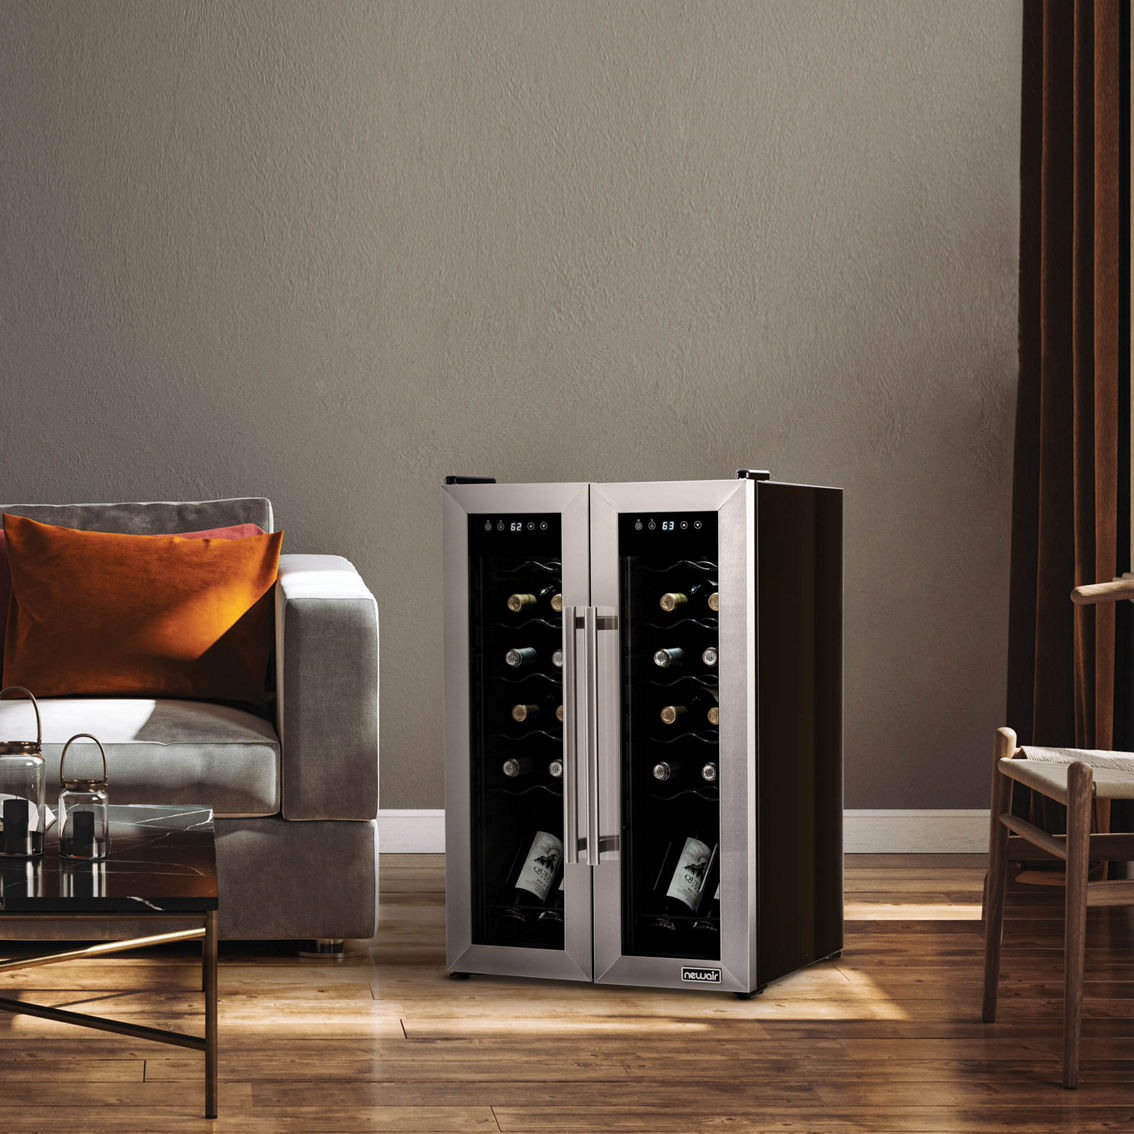 Newair French Door Freestanding 24 Bottle Wine Cooler Refrigerator - Image 5 of 8